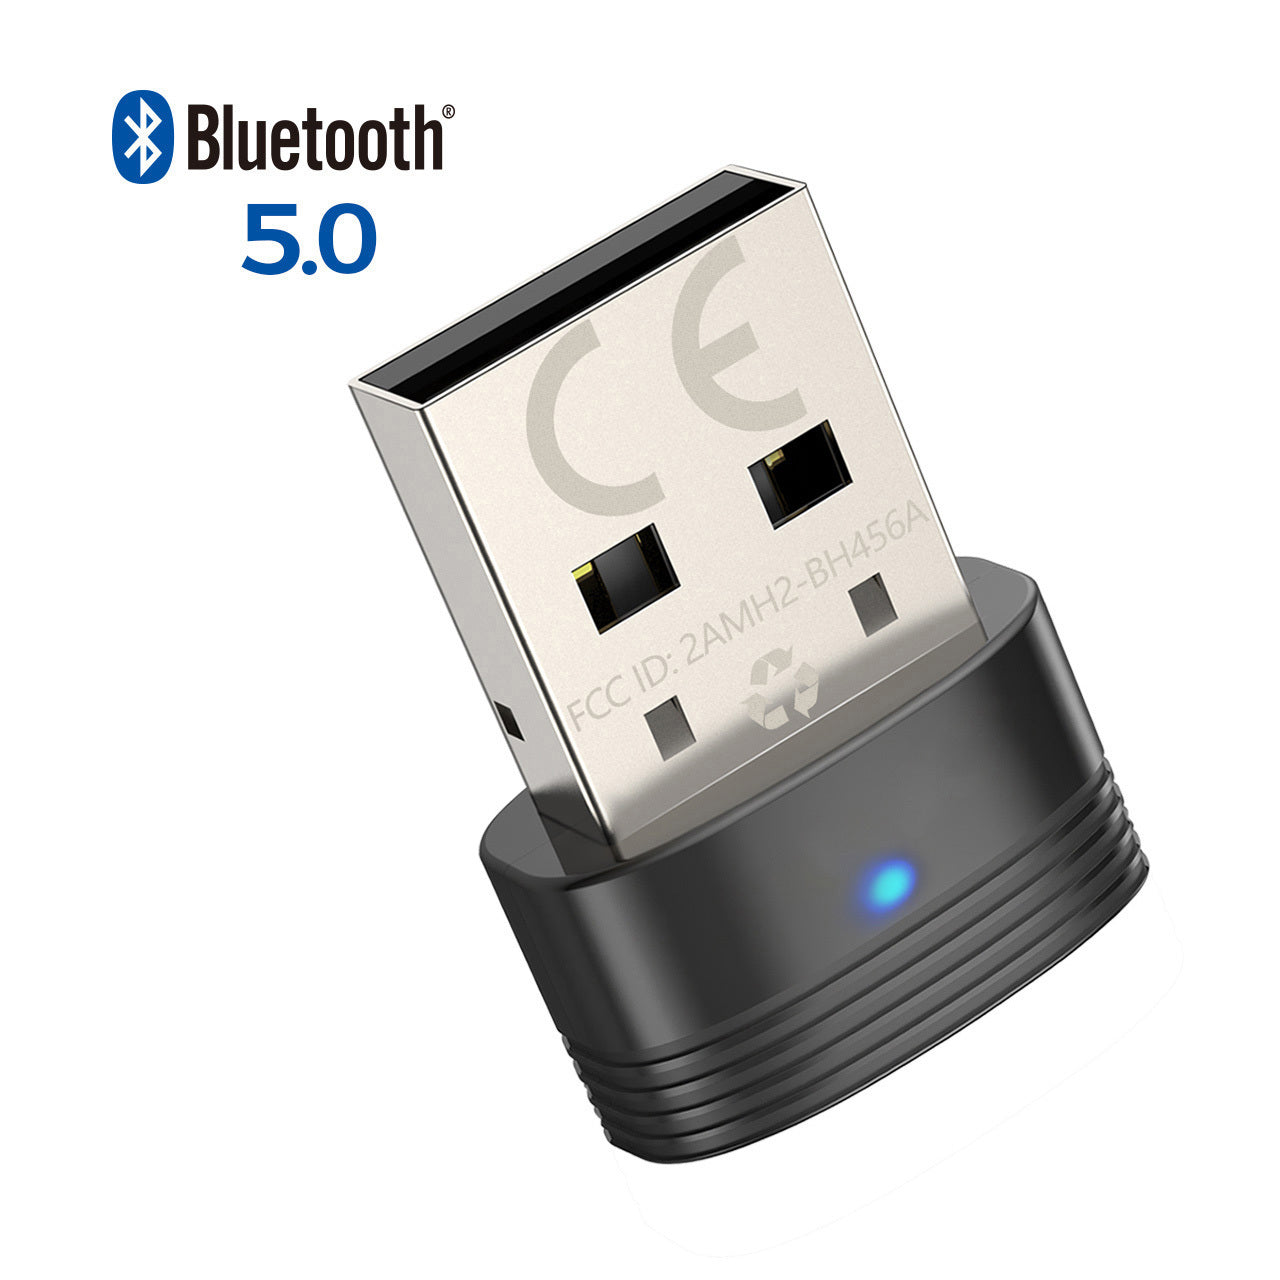 Achetez Adaptateur Bluetooth 5.0 Dongle Dongle USB Dongle Wireless